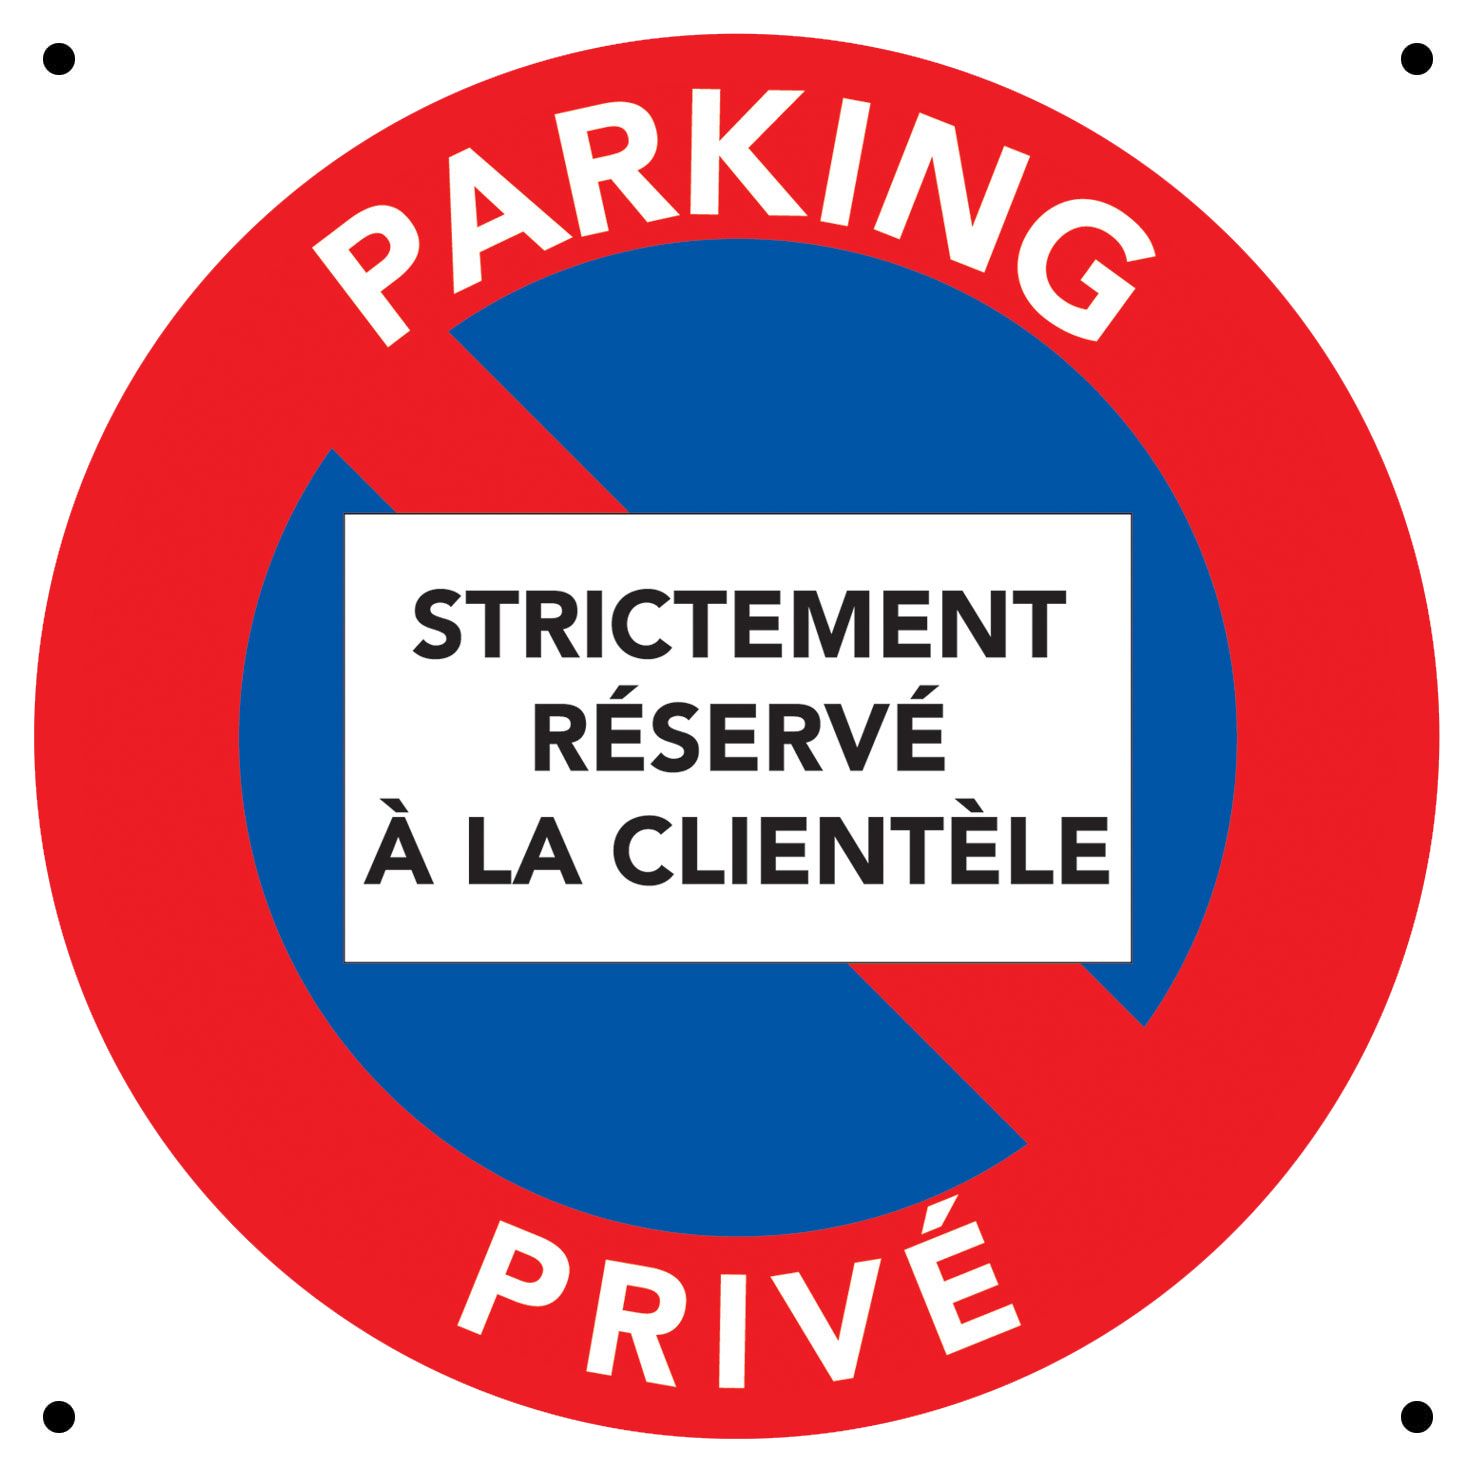 Interdiction de stationner car parking privé réservé à la clientèle.